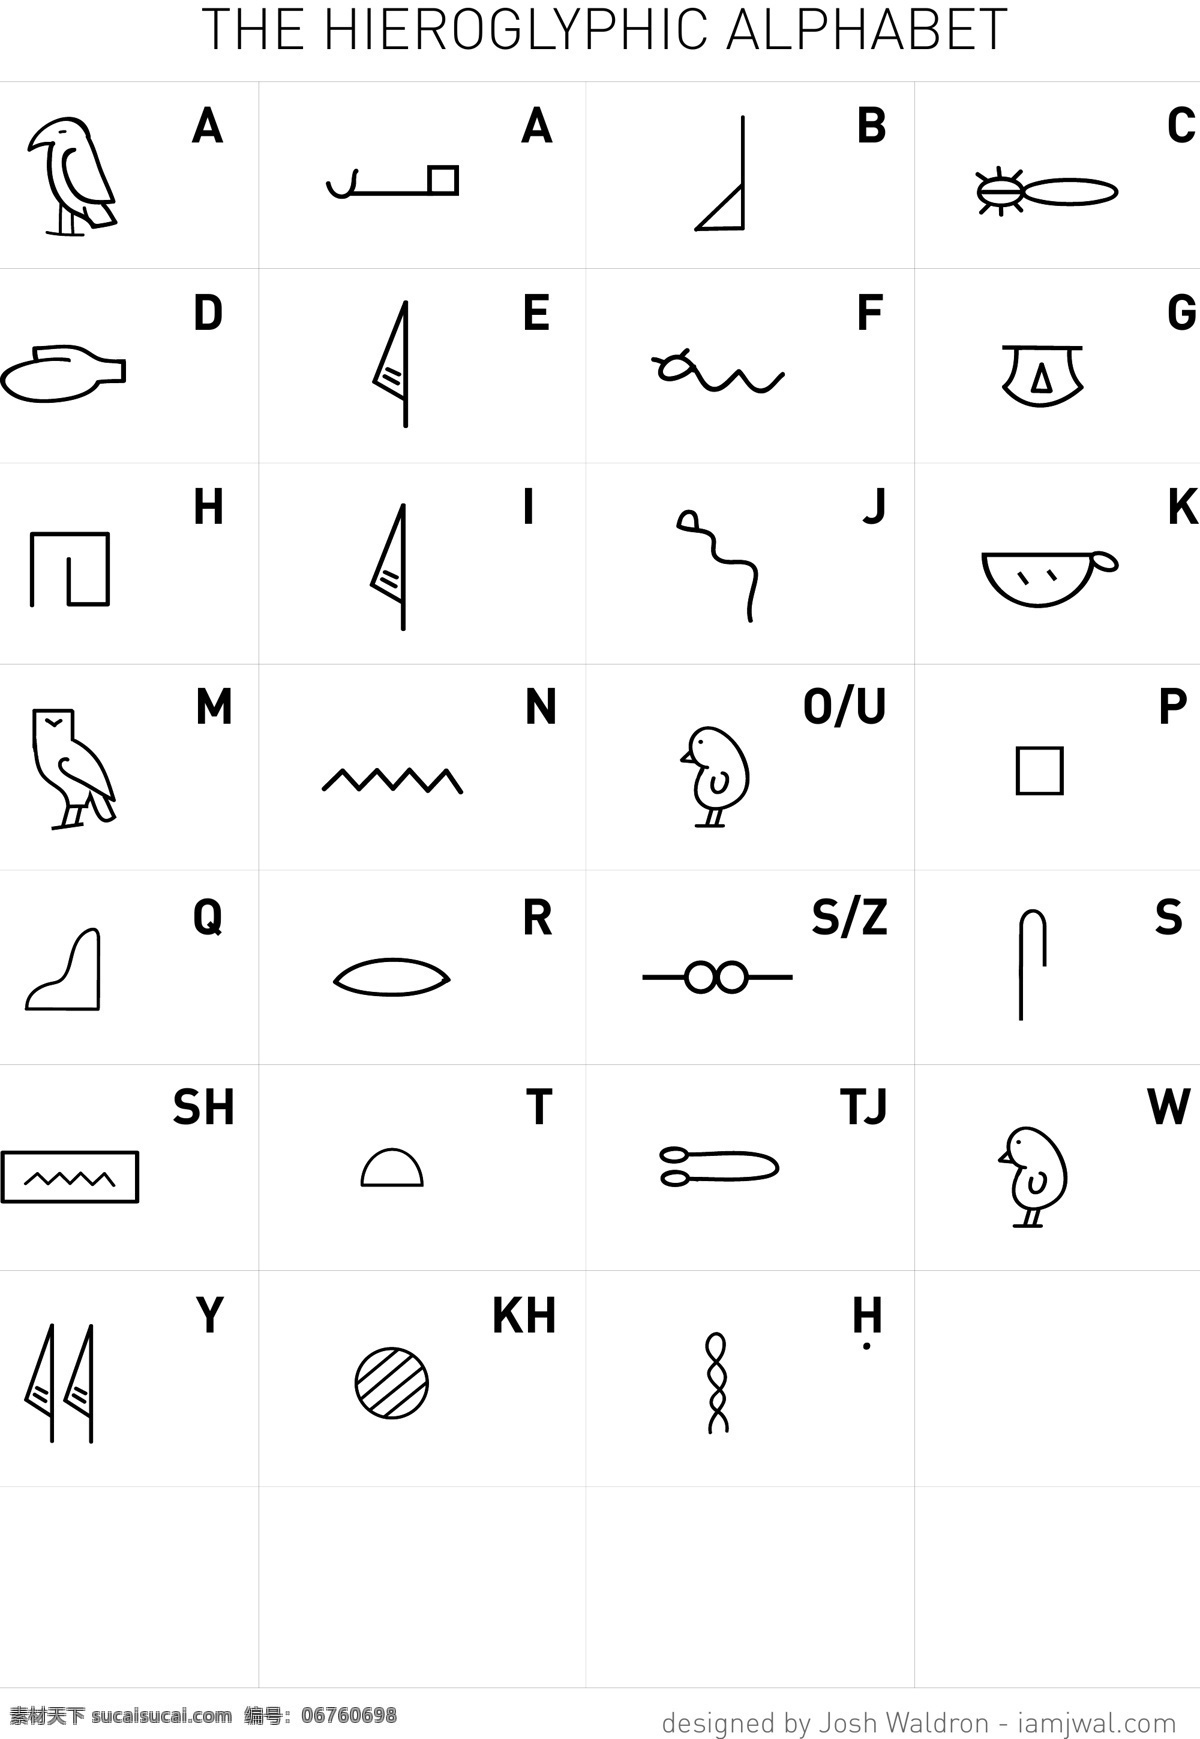 字母表 程式化的 埃及 象形文字 一个 程式化 青色 天蓝色